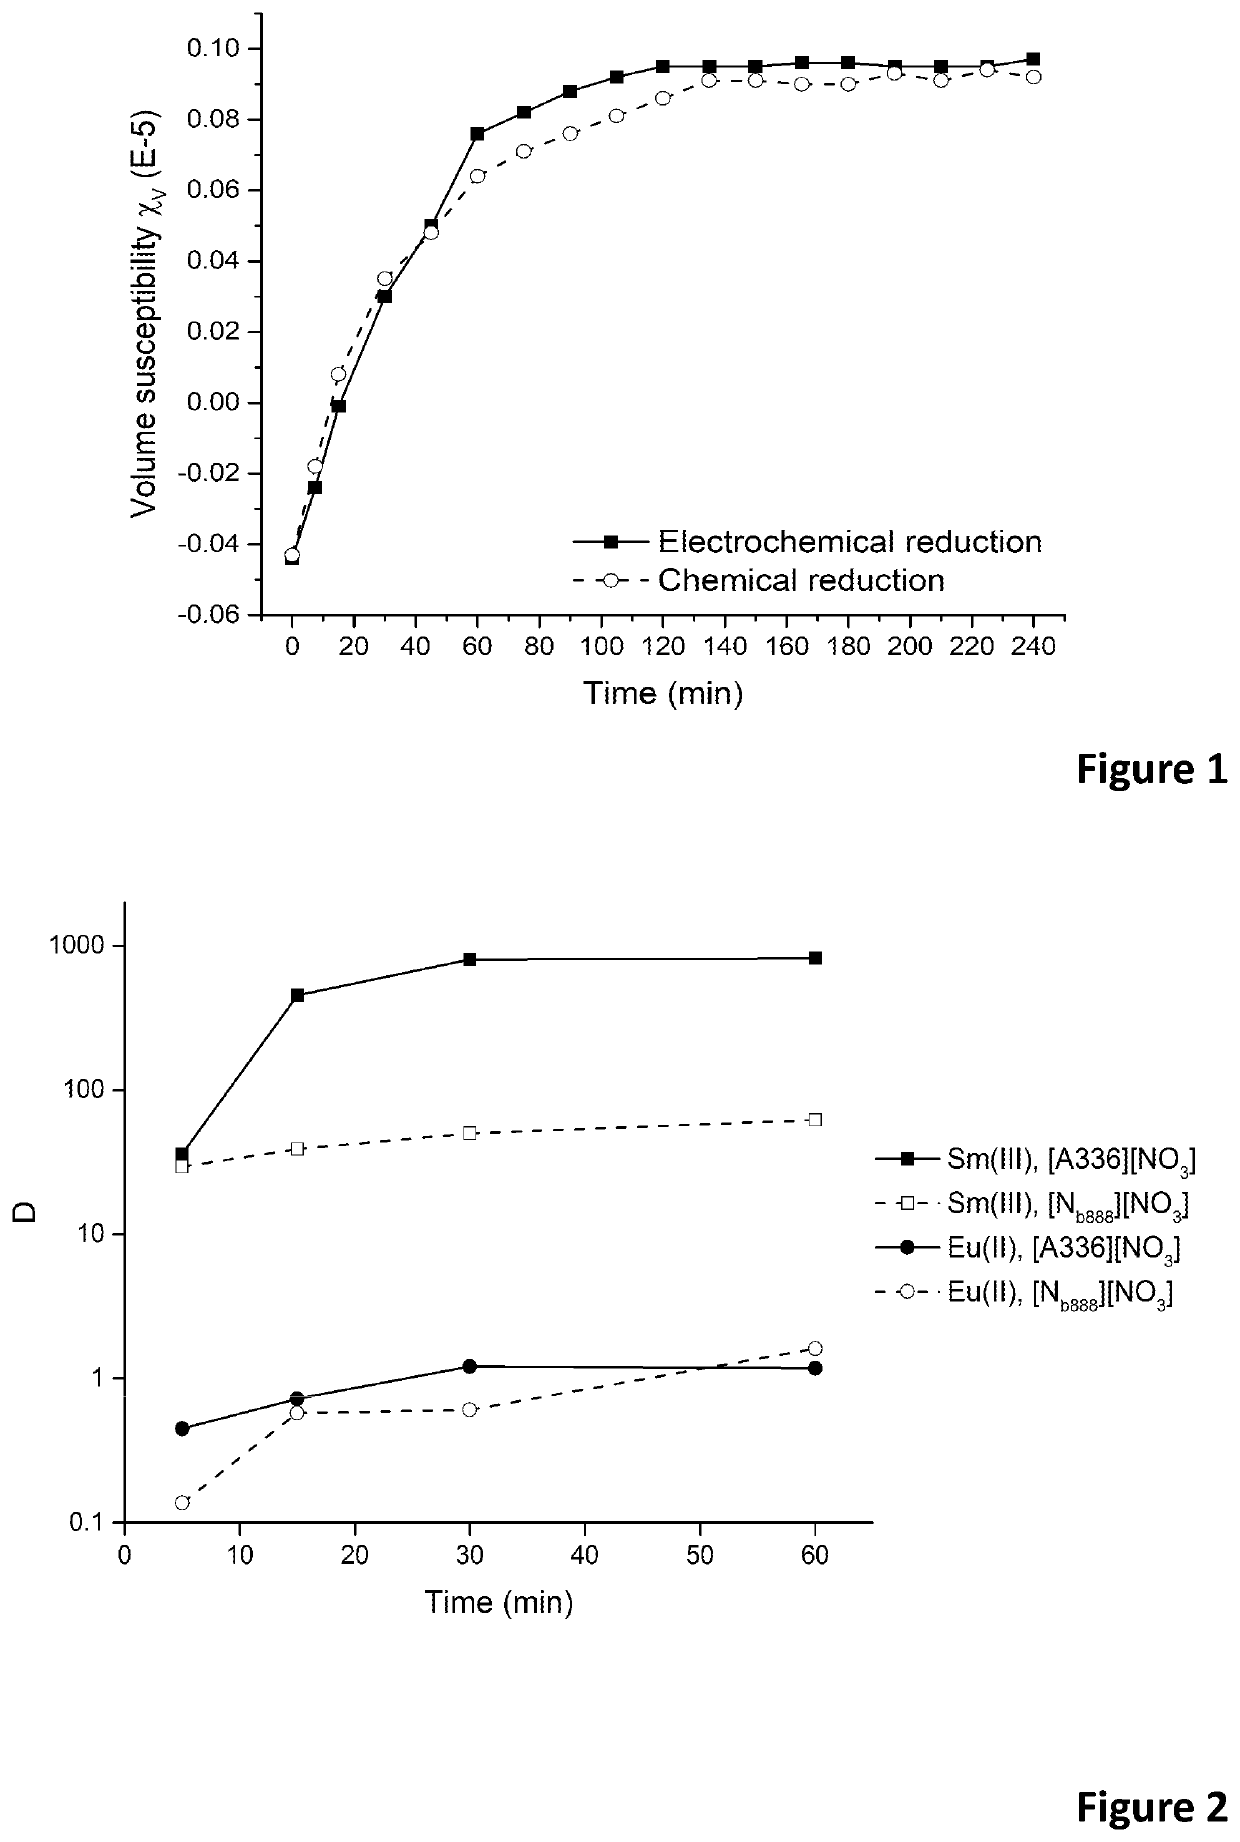 Removal of europium impurities from samarium-153 in nitrate media using ionic liquids